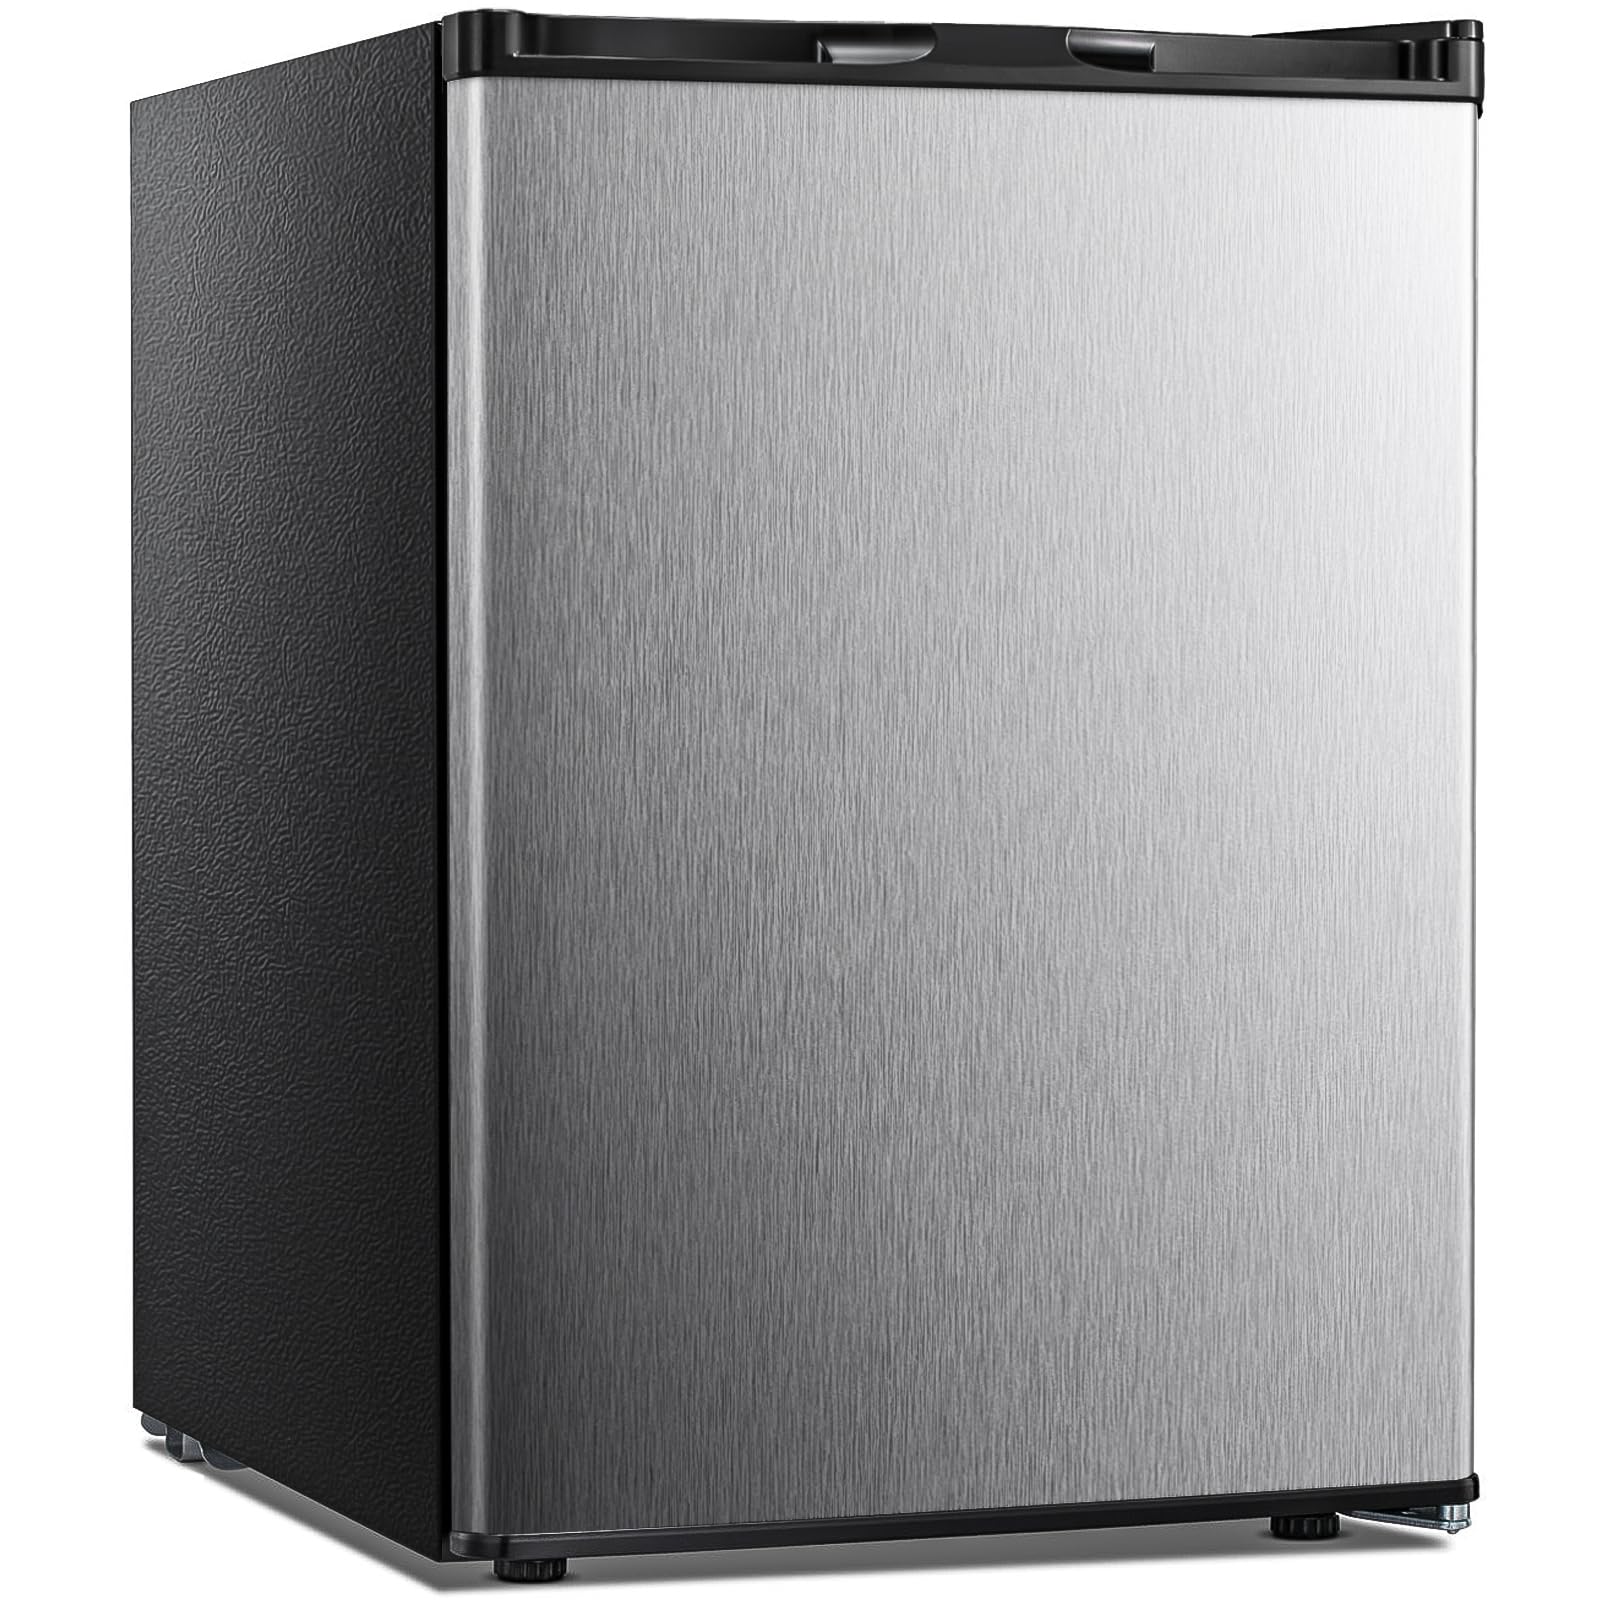 1.1 CU ftミニ冷蔵庫直立フリーザー、可逆的なステンレス鋼ドア、銀1.1 Cu Ft Mini Fridge Upright Freezer, Reversible Stainless Steel